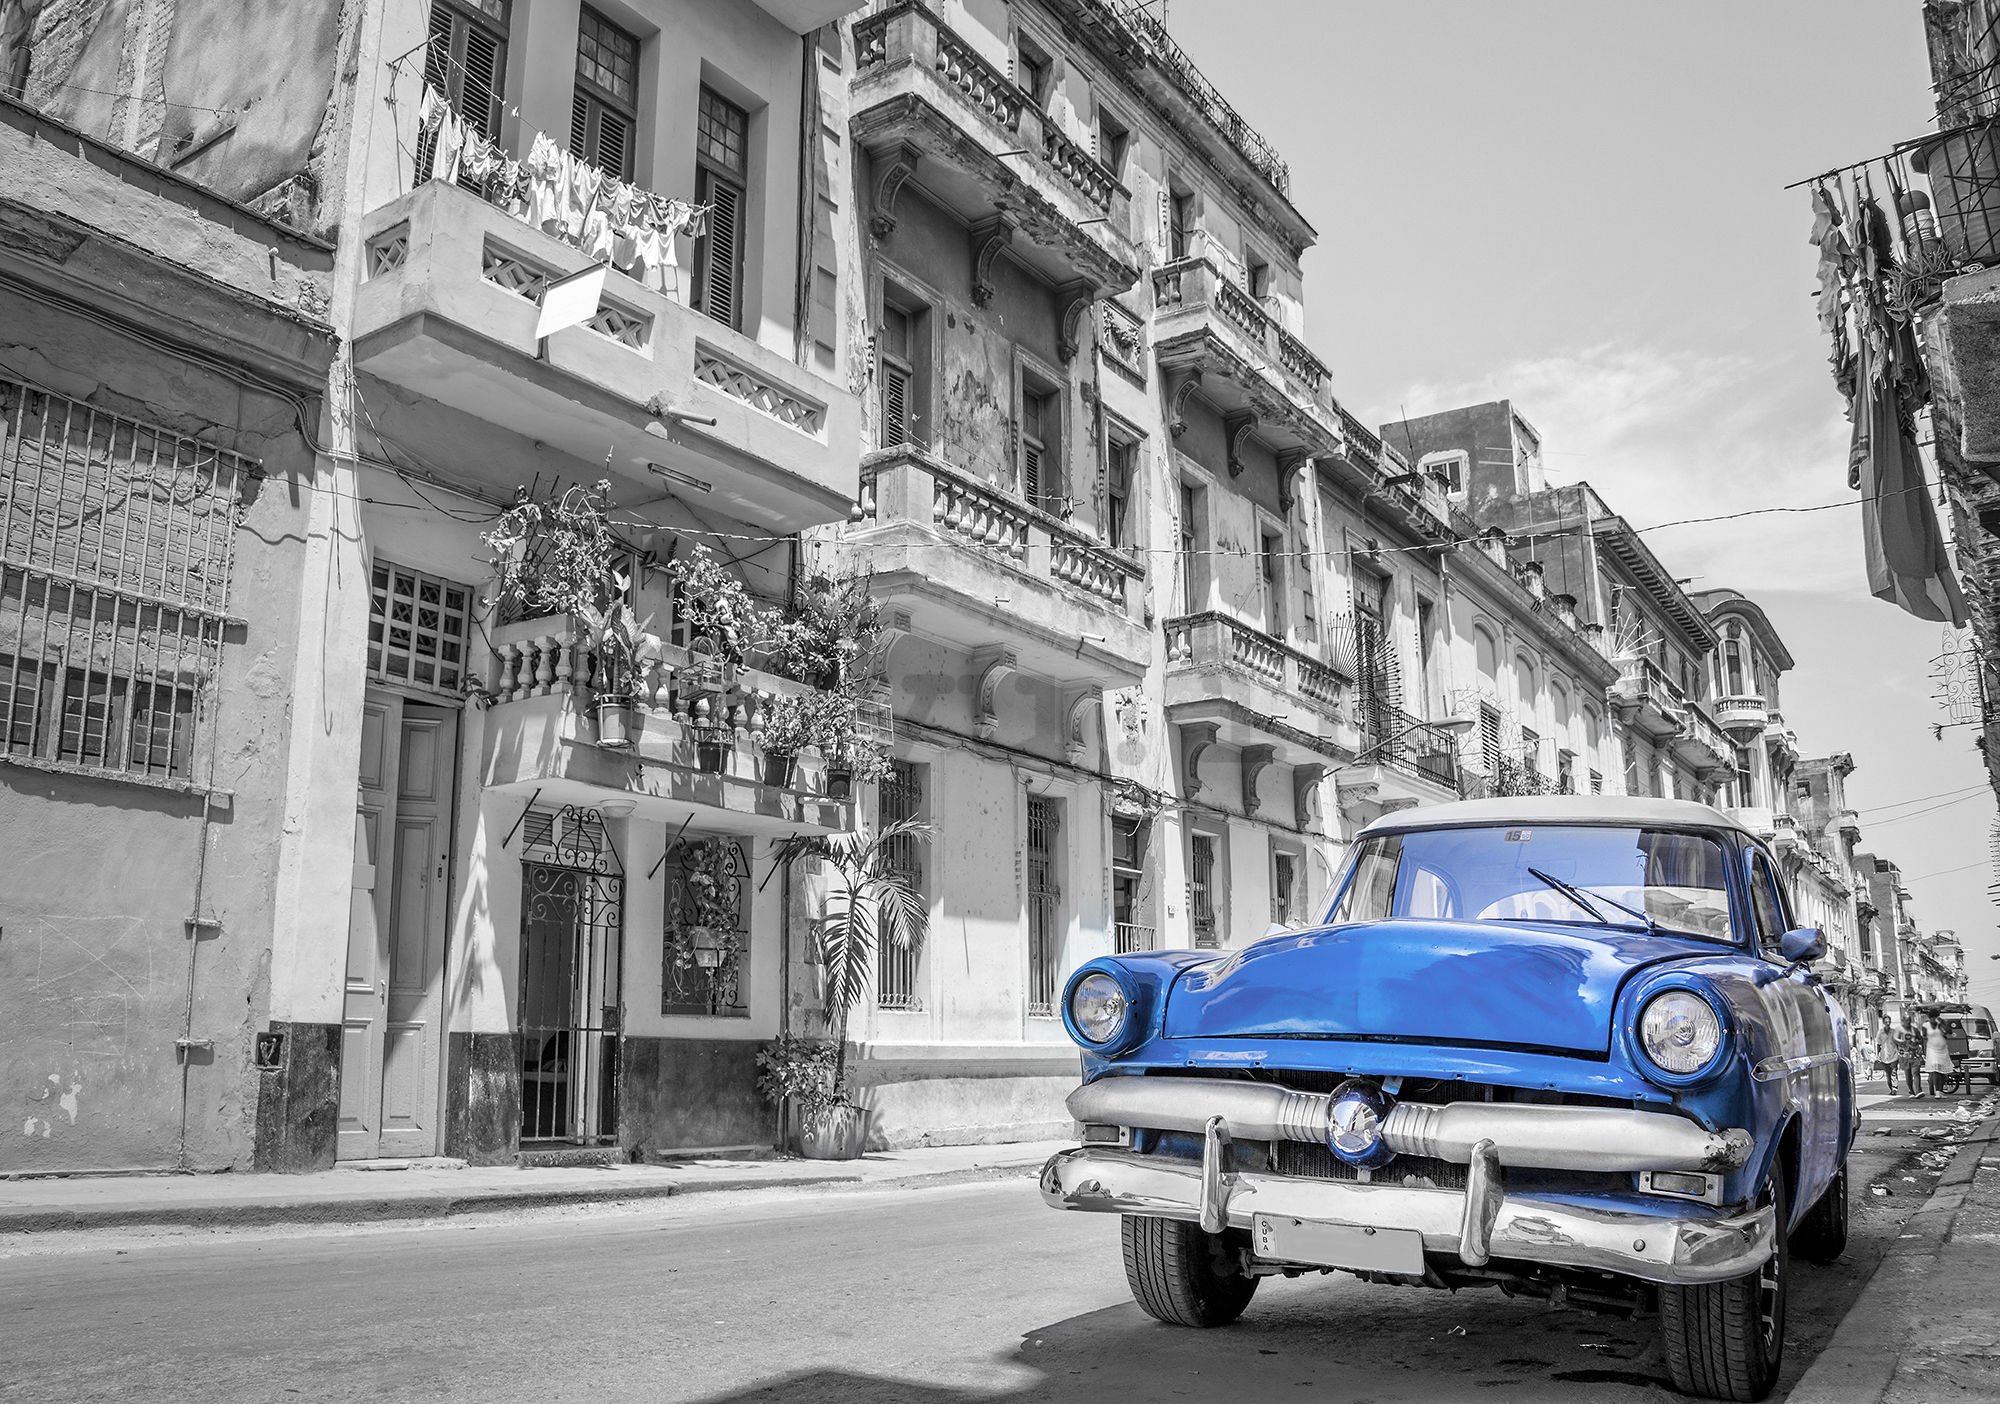 Fotomurale in TNT: Auto blu dell'Avana - 104x152,5 cm